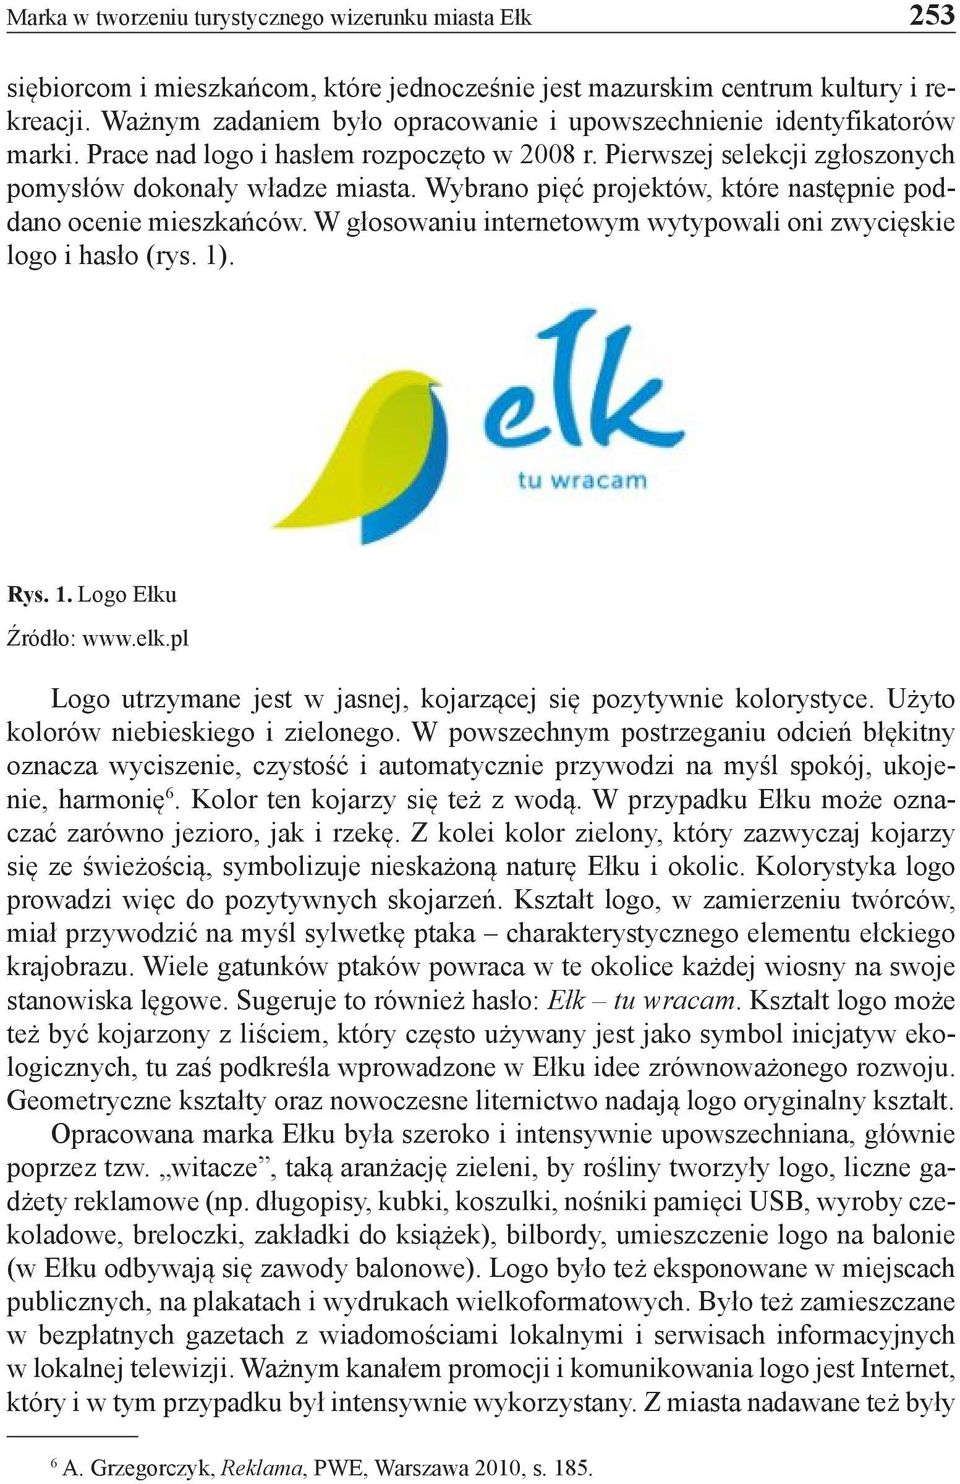 Wybrano pięć projektów, które następnie poddano ocenie mieszkańców. W głosowaniu internetowym wytypowali oni zwycięskie logo i hasło (rys. 1). Rys. 1. Logo Ełku Źródło: www.elk.